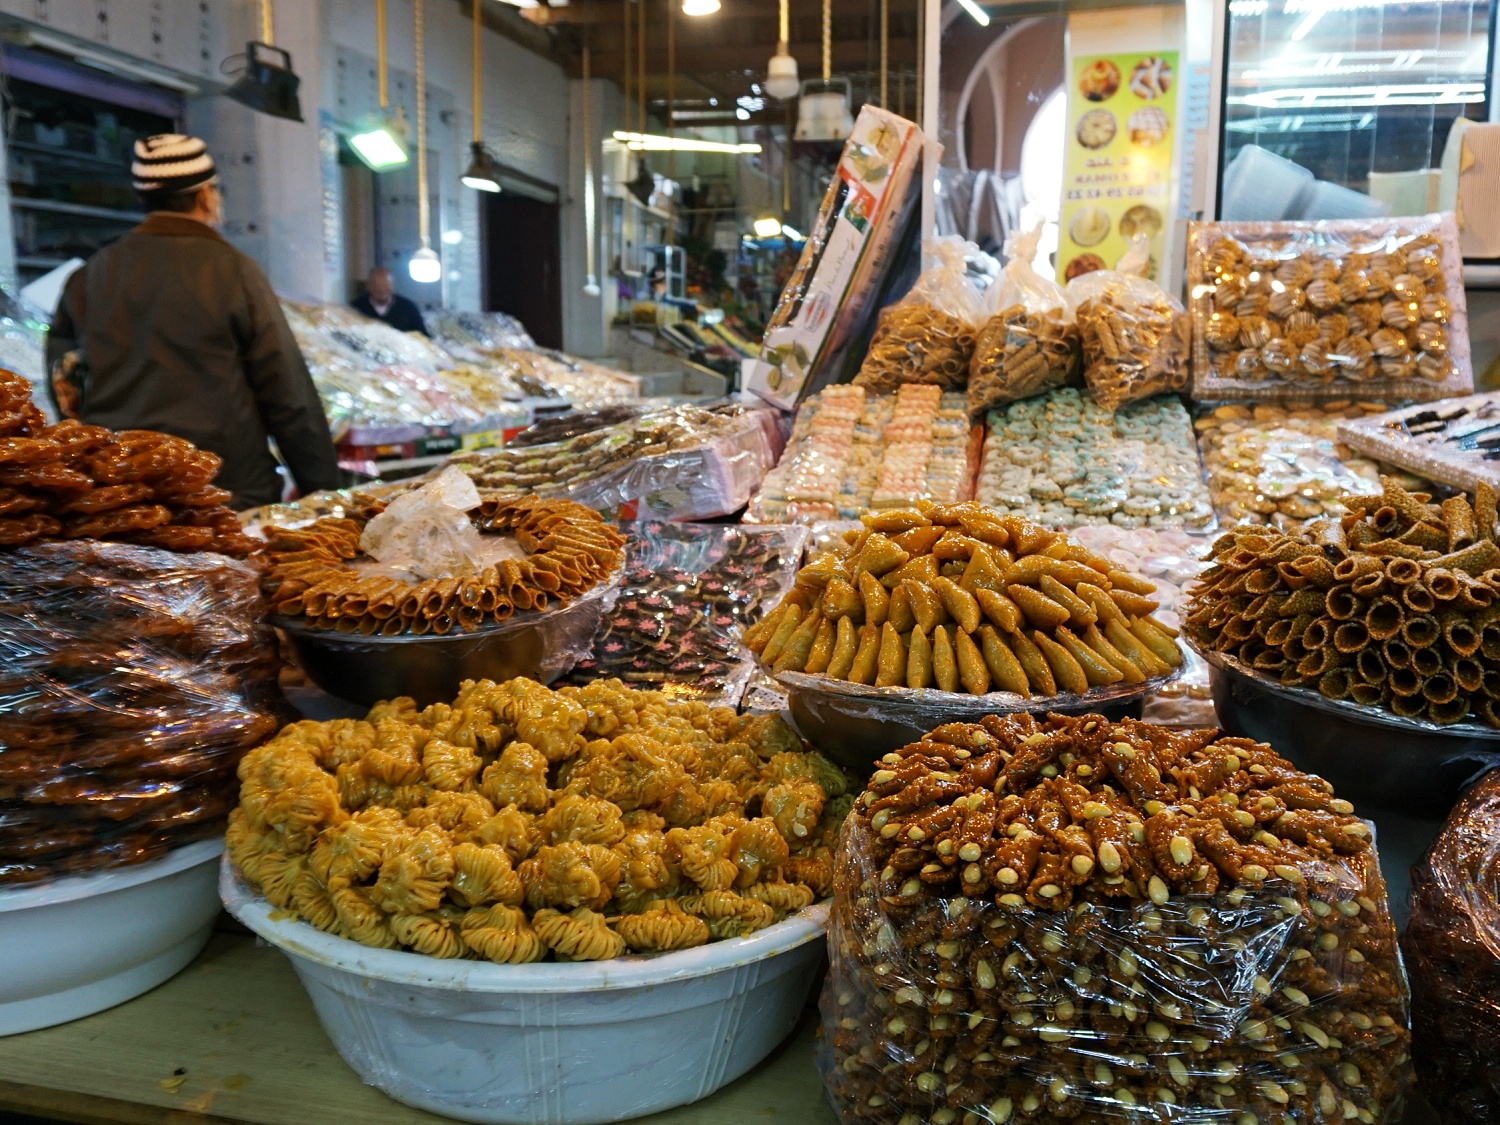 Meknes market